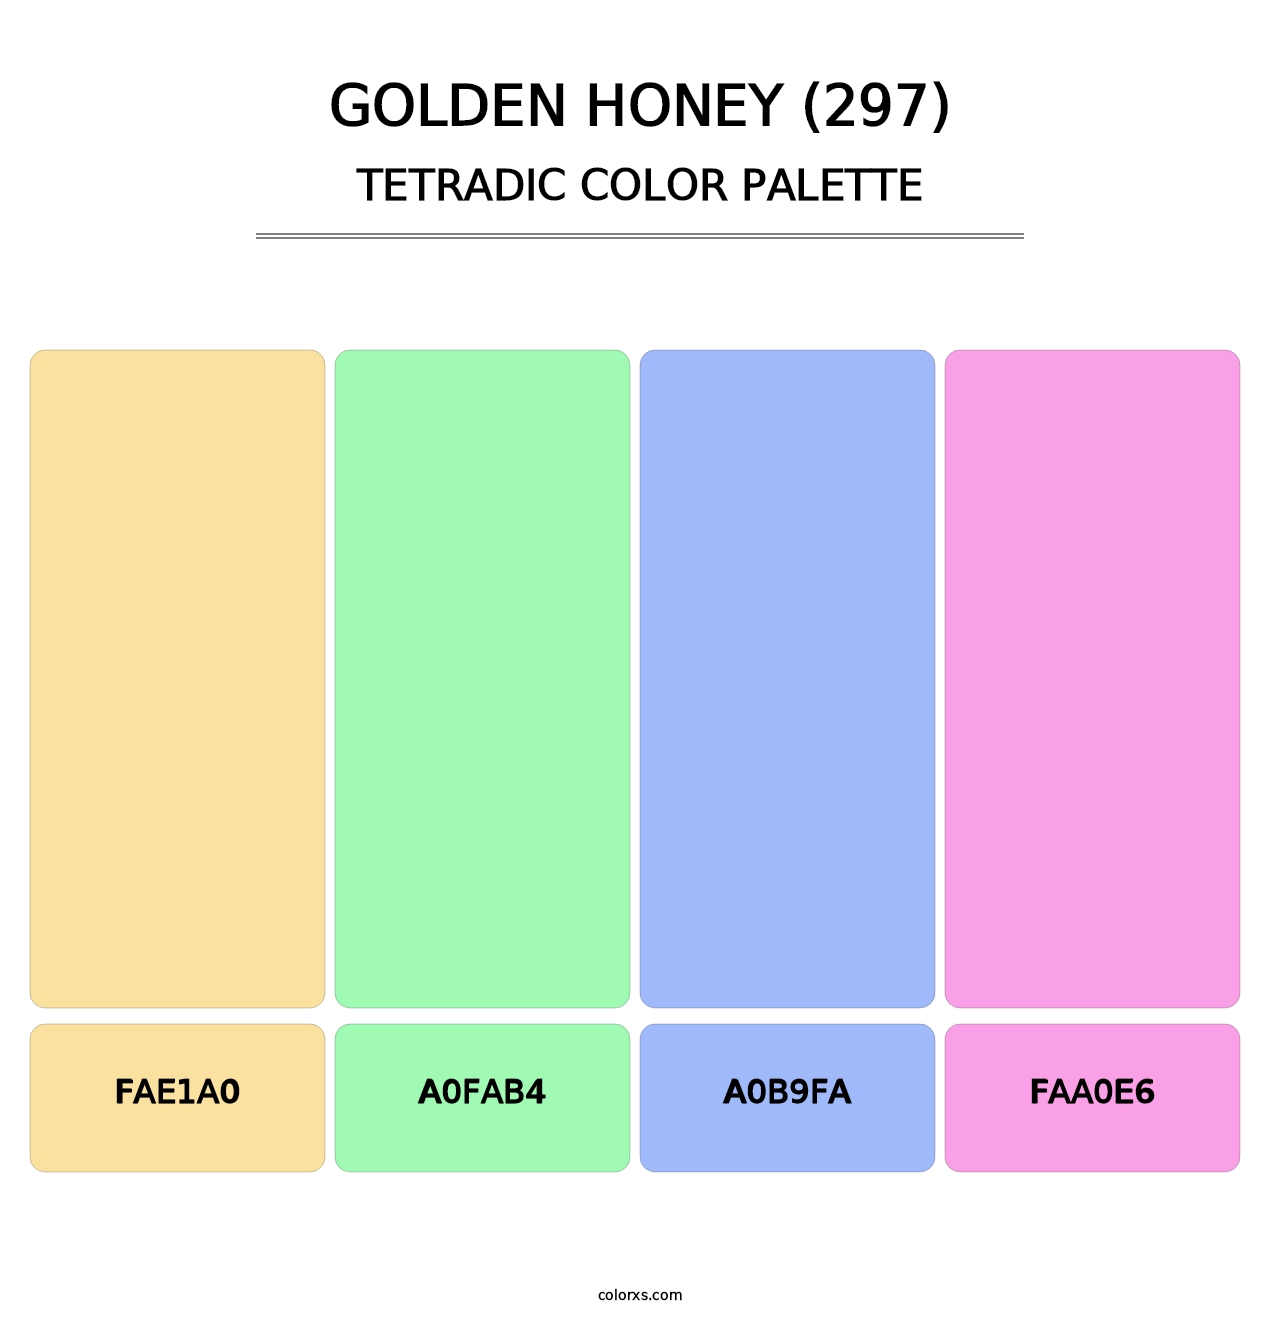 Golden Honey (297) - Tetradic Color Palette